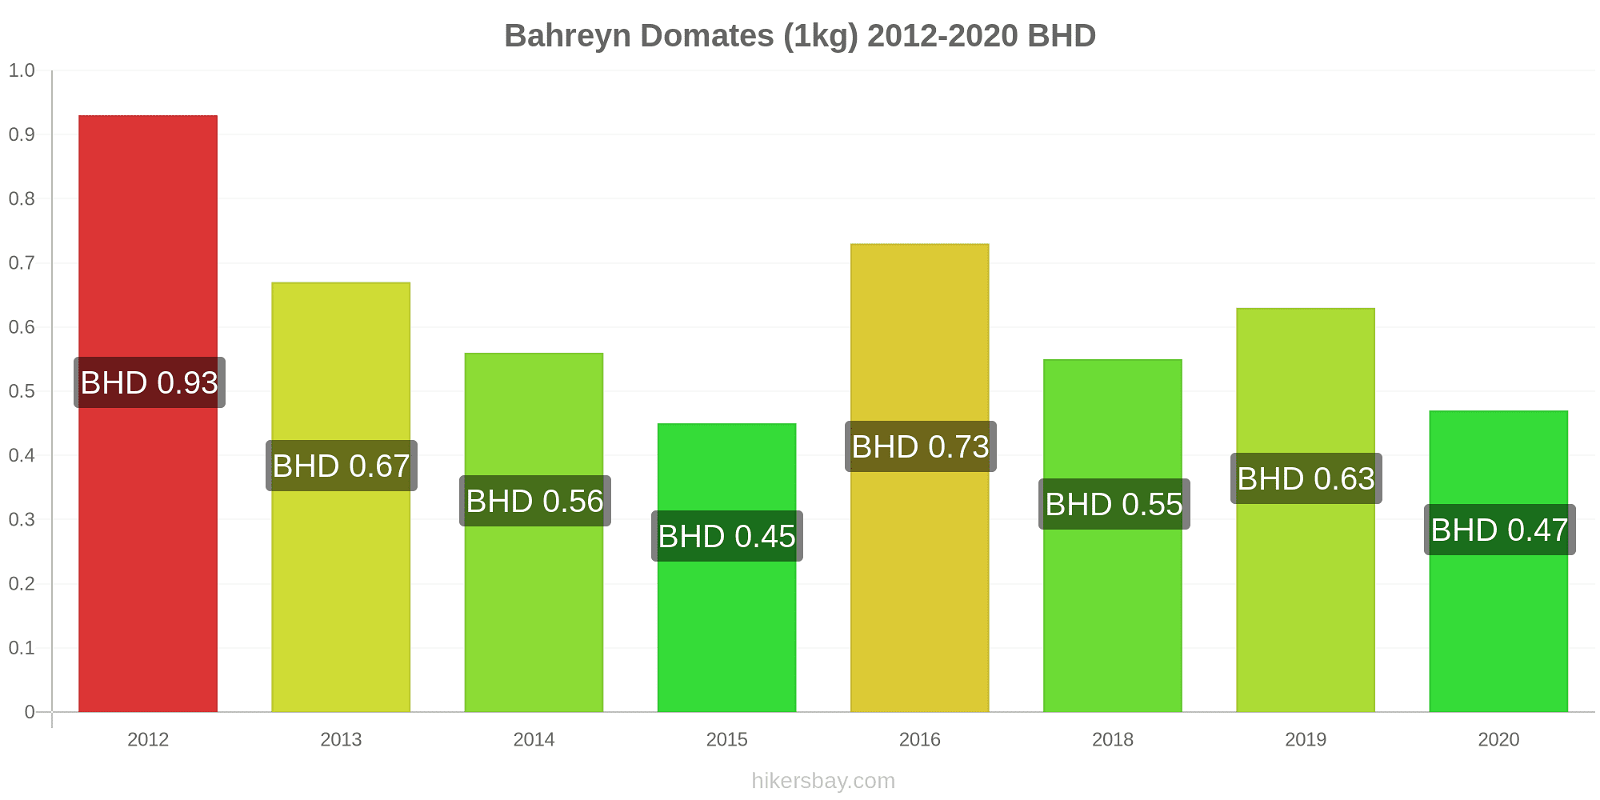 Bahreyn fiyat değişiklikleri Domates (1kg) hikersbay.com